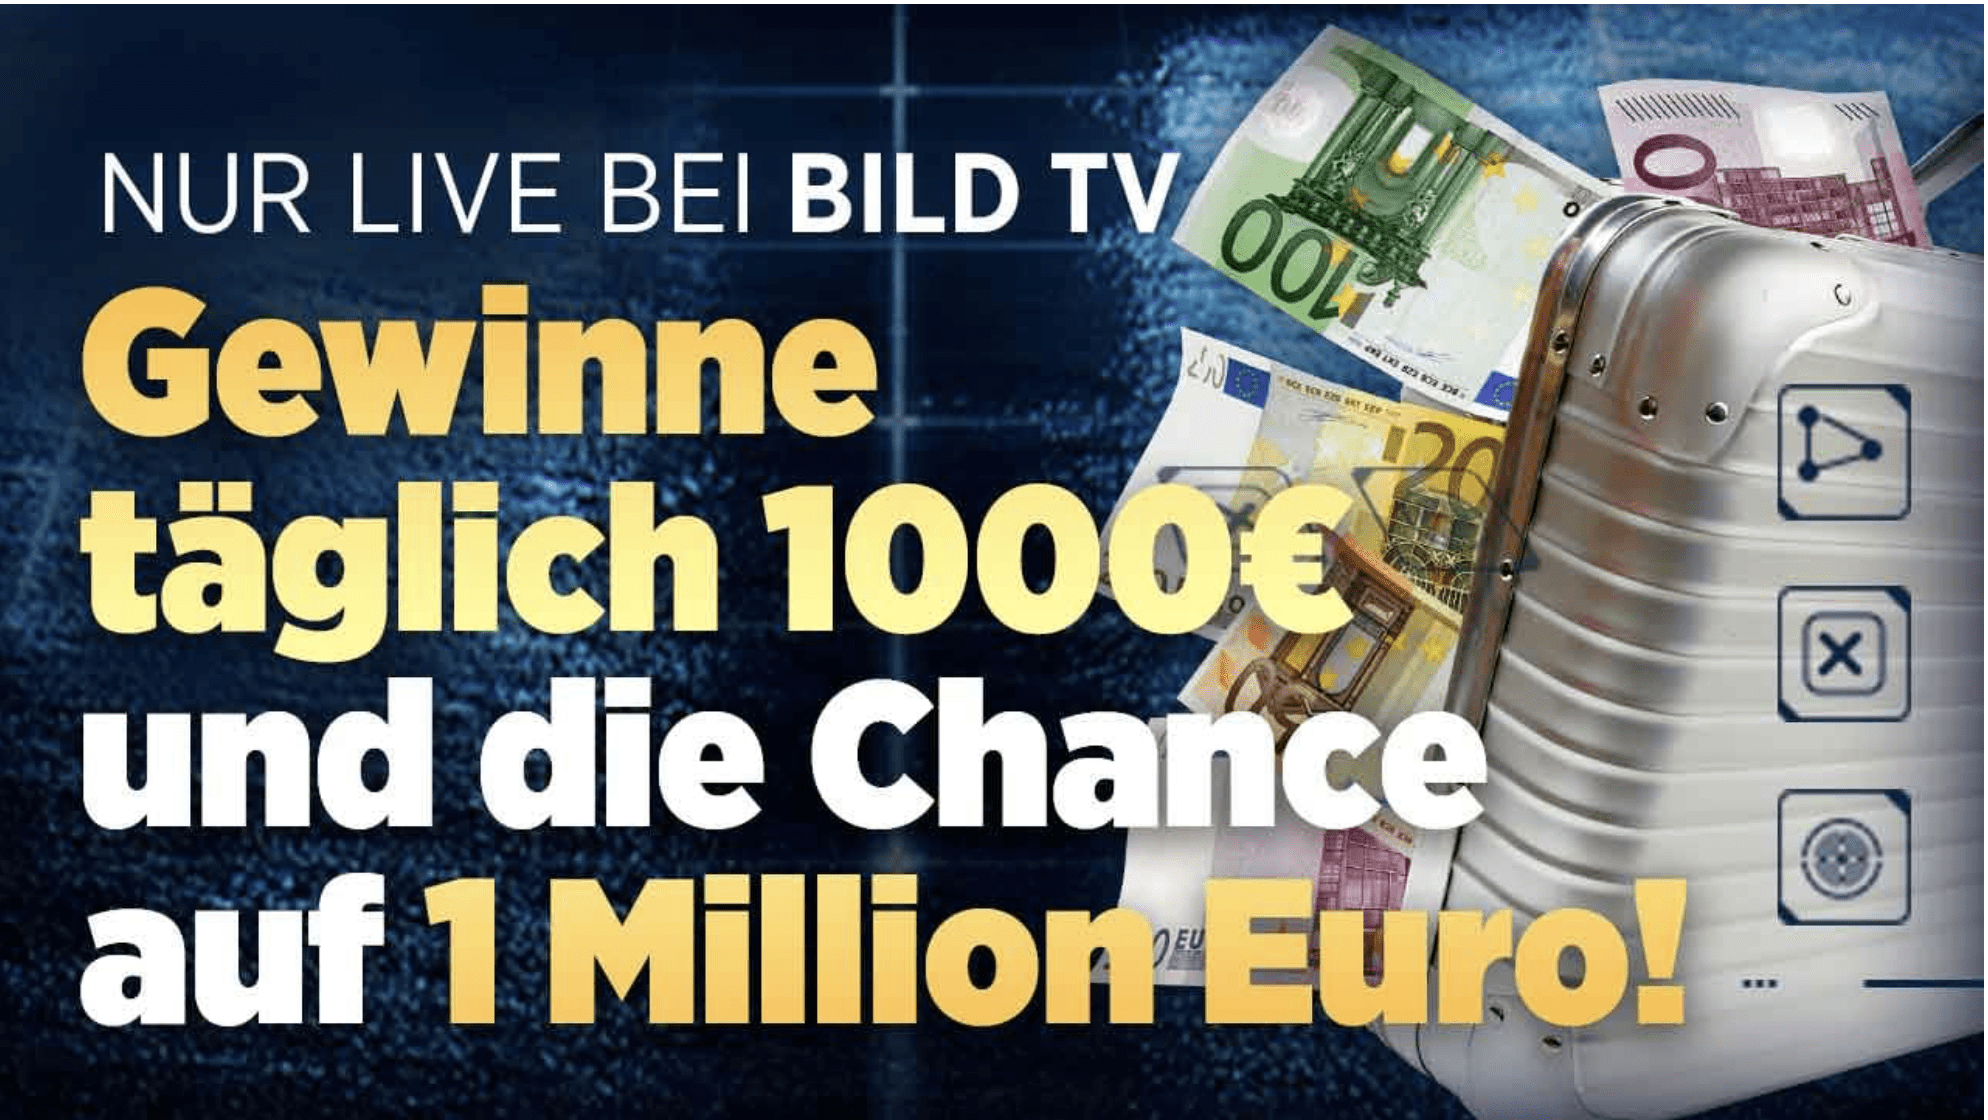 case_„BILD TV“_Call-in_Tresor-Gewinnspiel_Schnapp Dir die Million!“